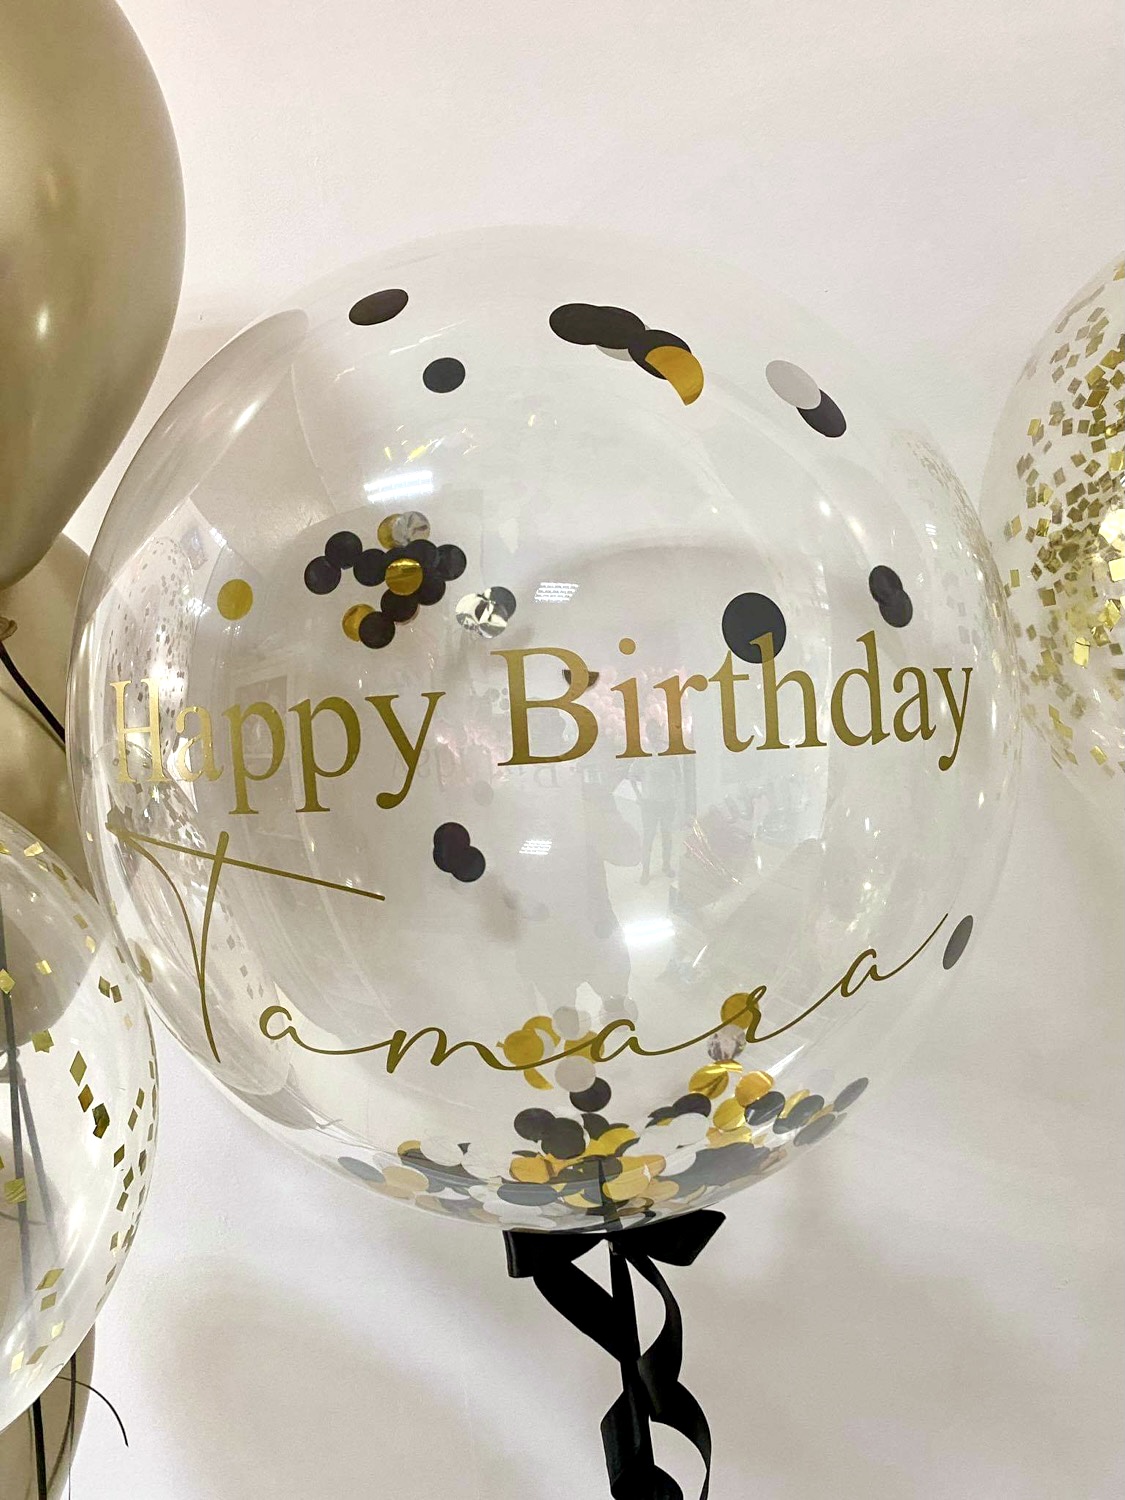 Balon personalizowany i balony złote z konfetti.